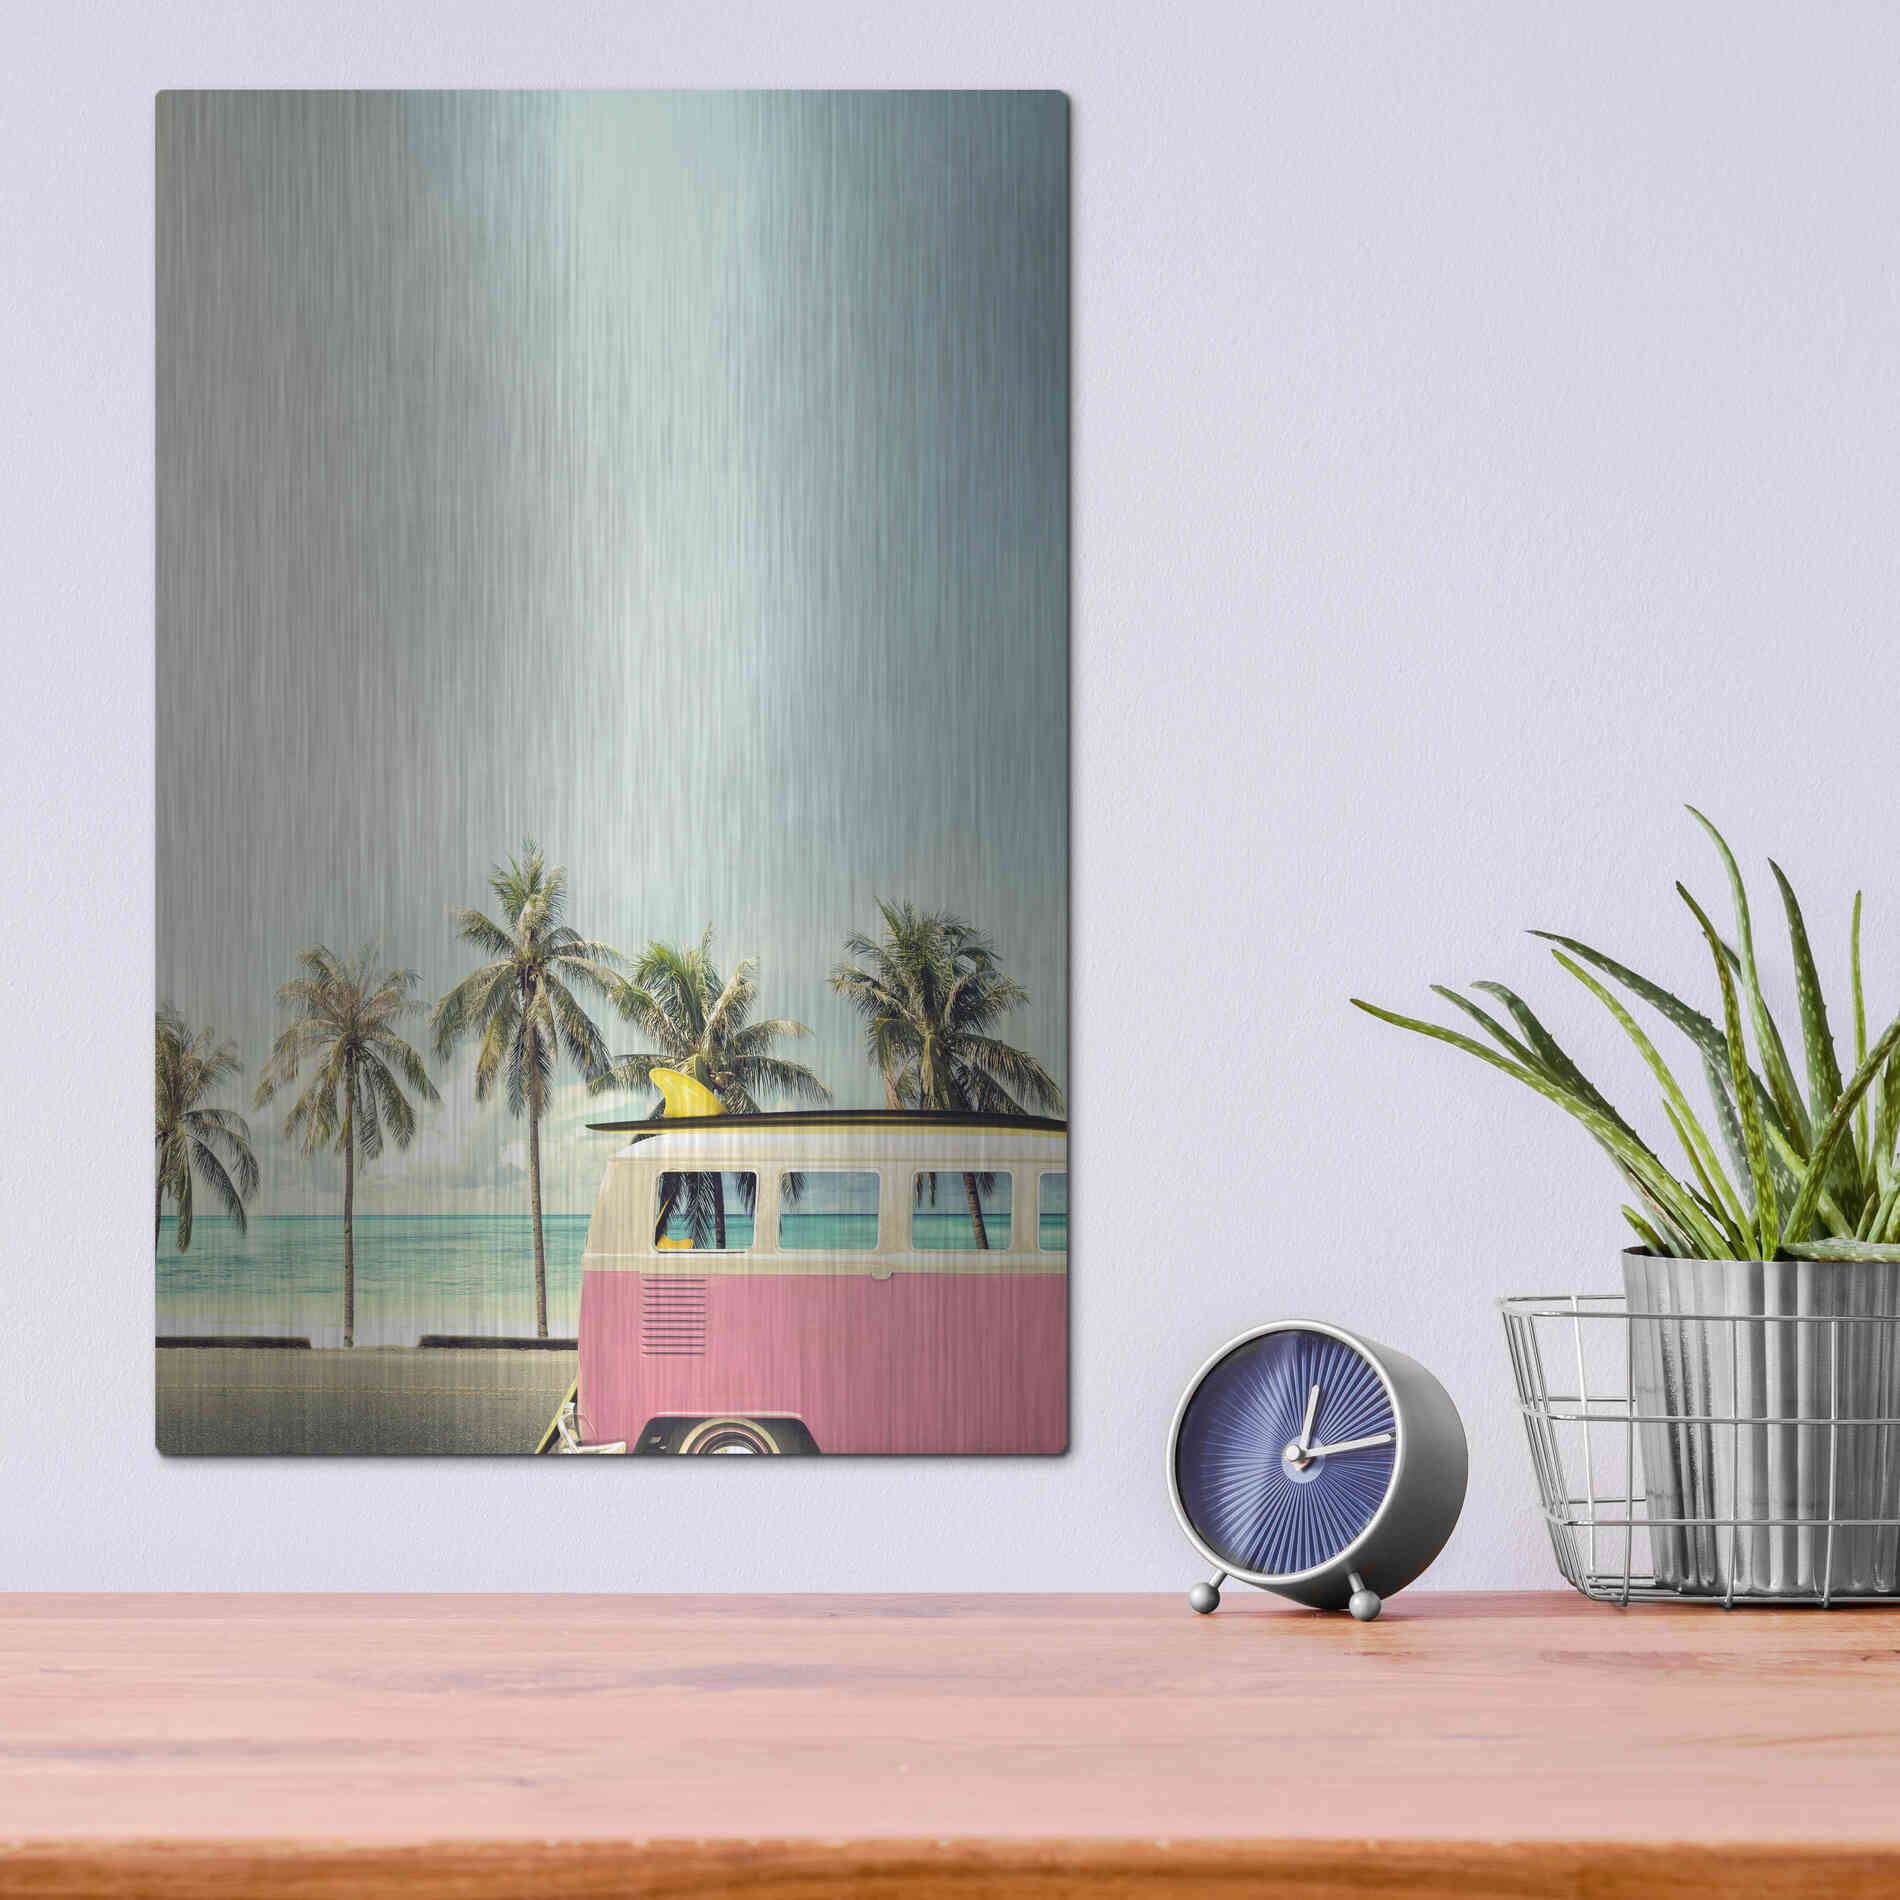 Luxe Metal Art 'Surf Bus Pink' by Design Fabrikken, Metal Wall Art,12x16